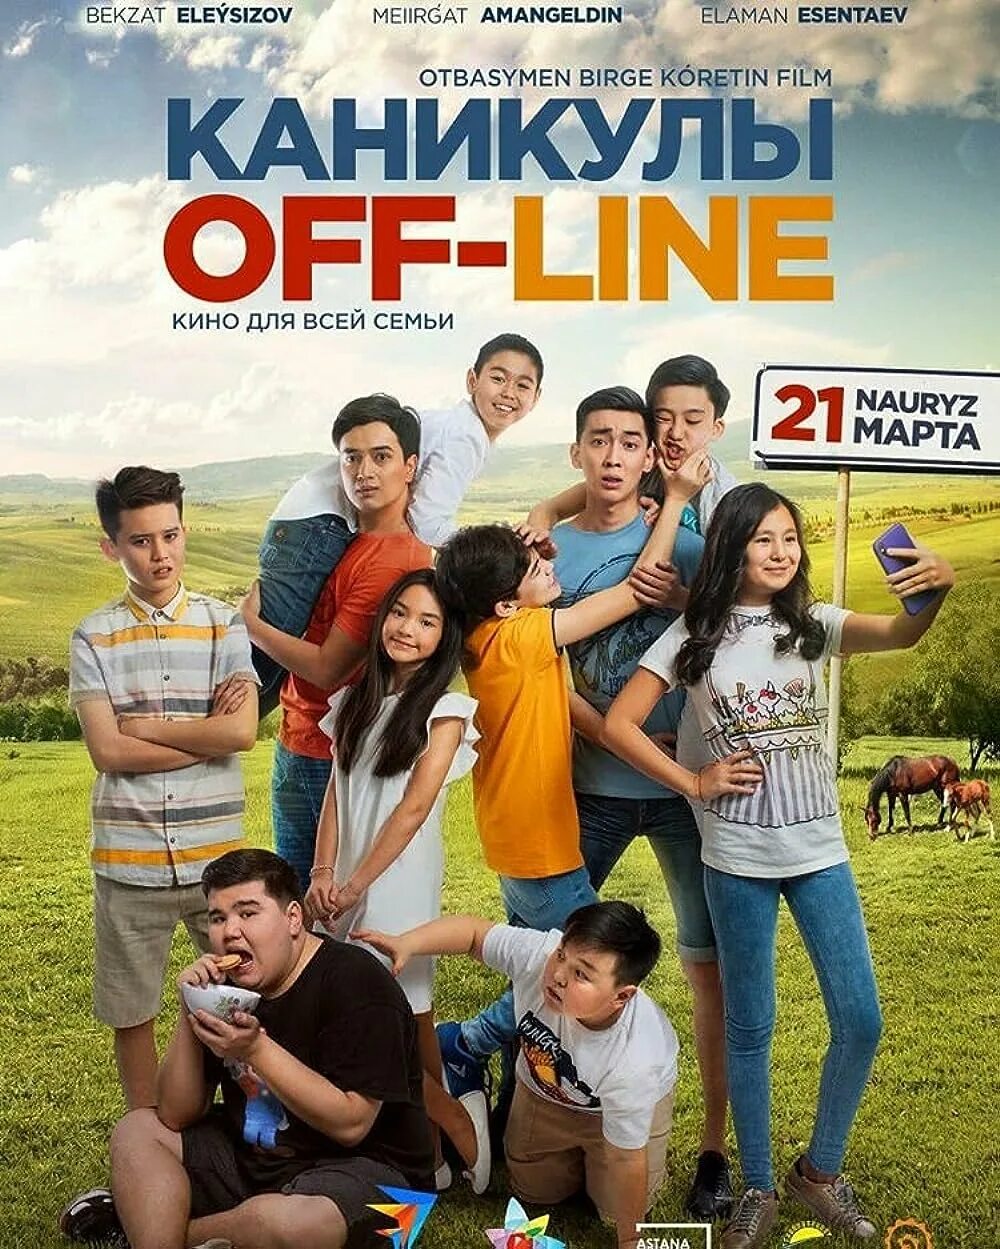 Каникулы off-line 2 (2019). Offline off